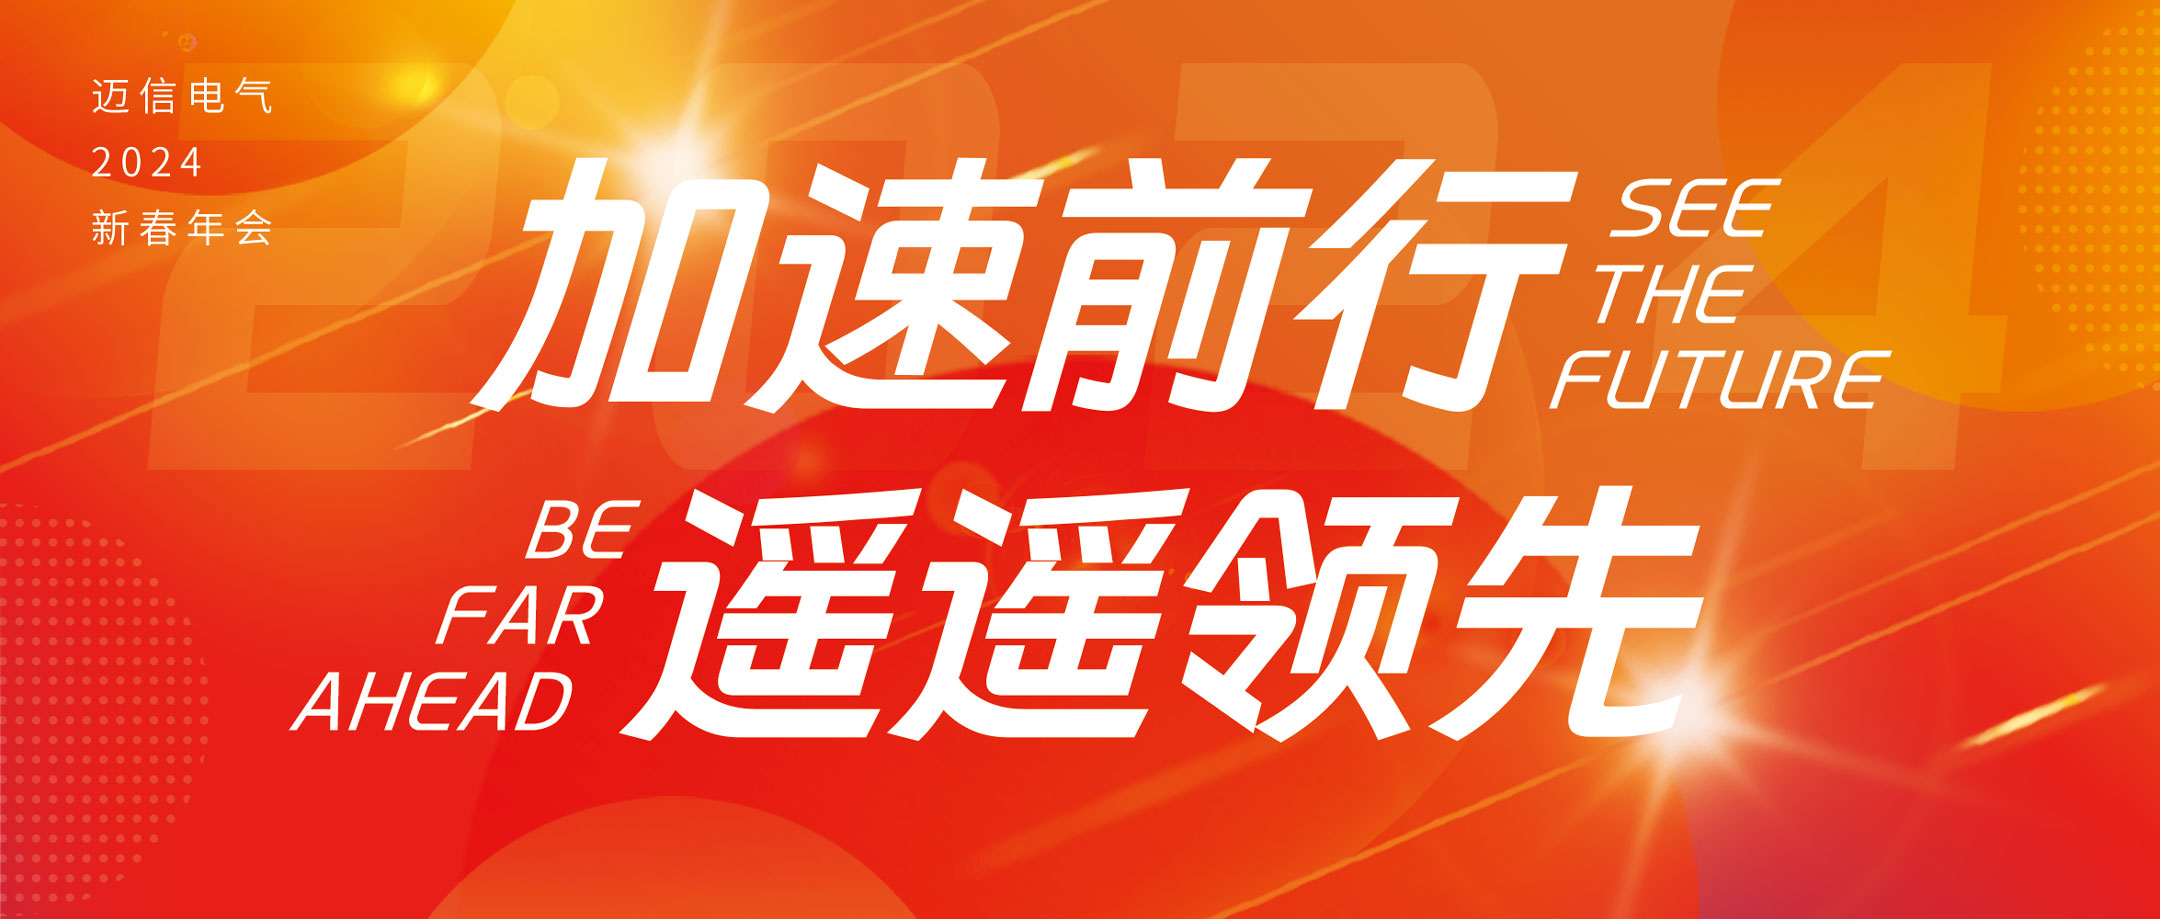 加速前行 遥遥领先 | beat365中文版官方网站2024年会盛典